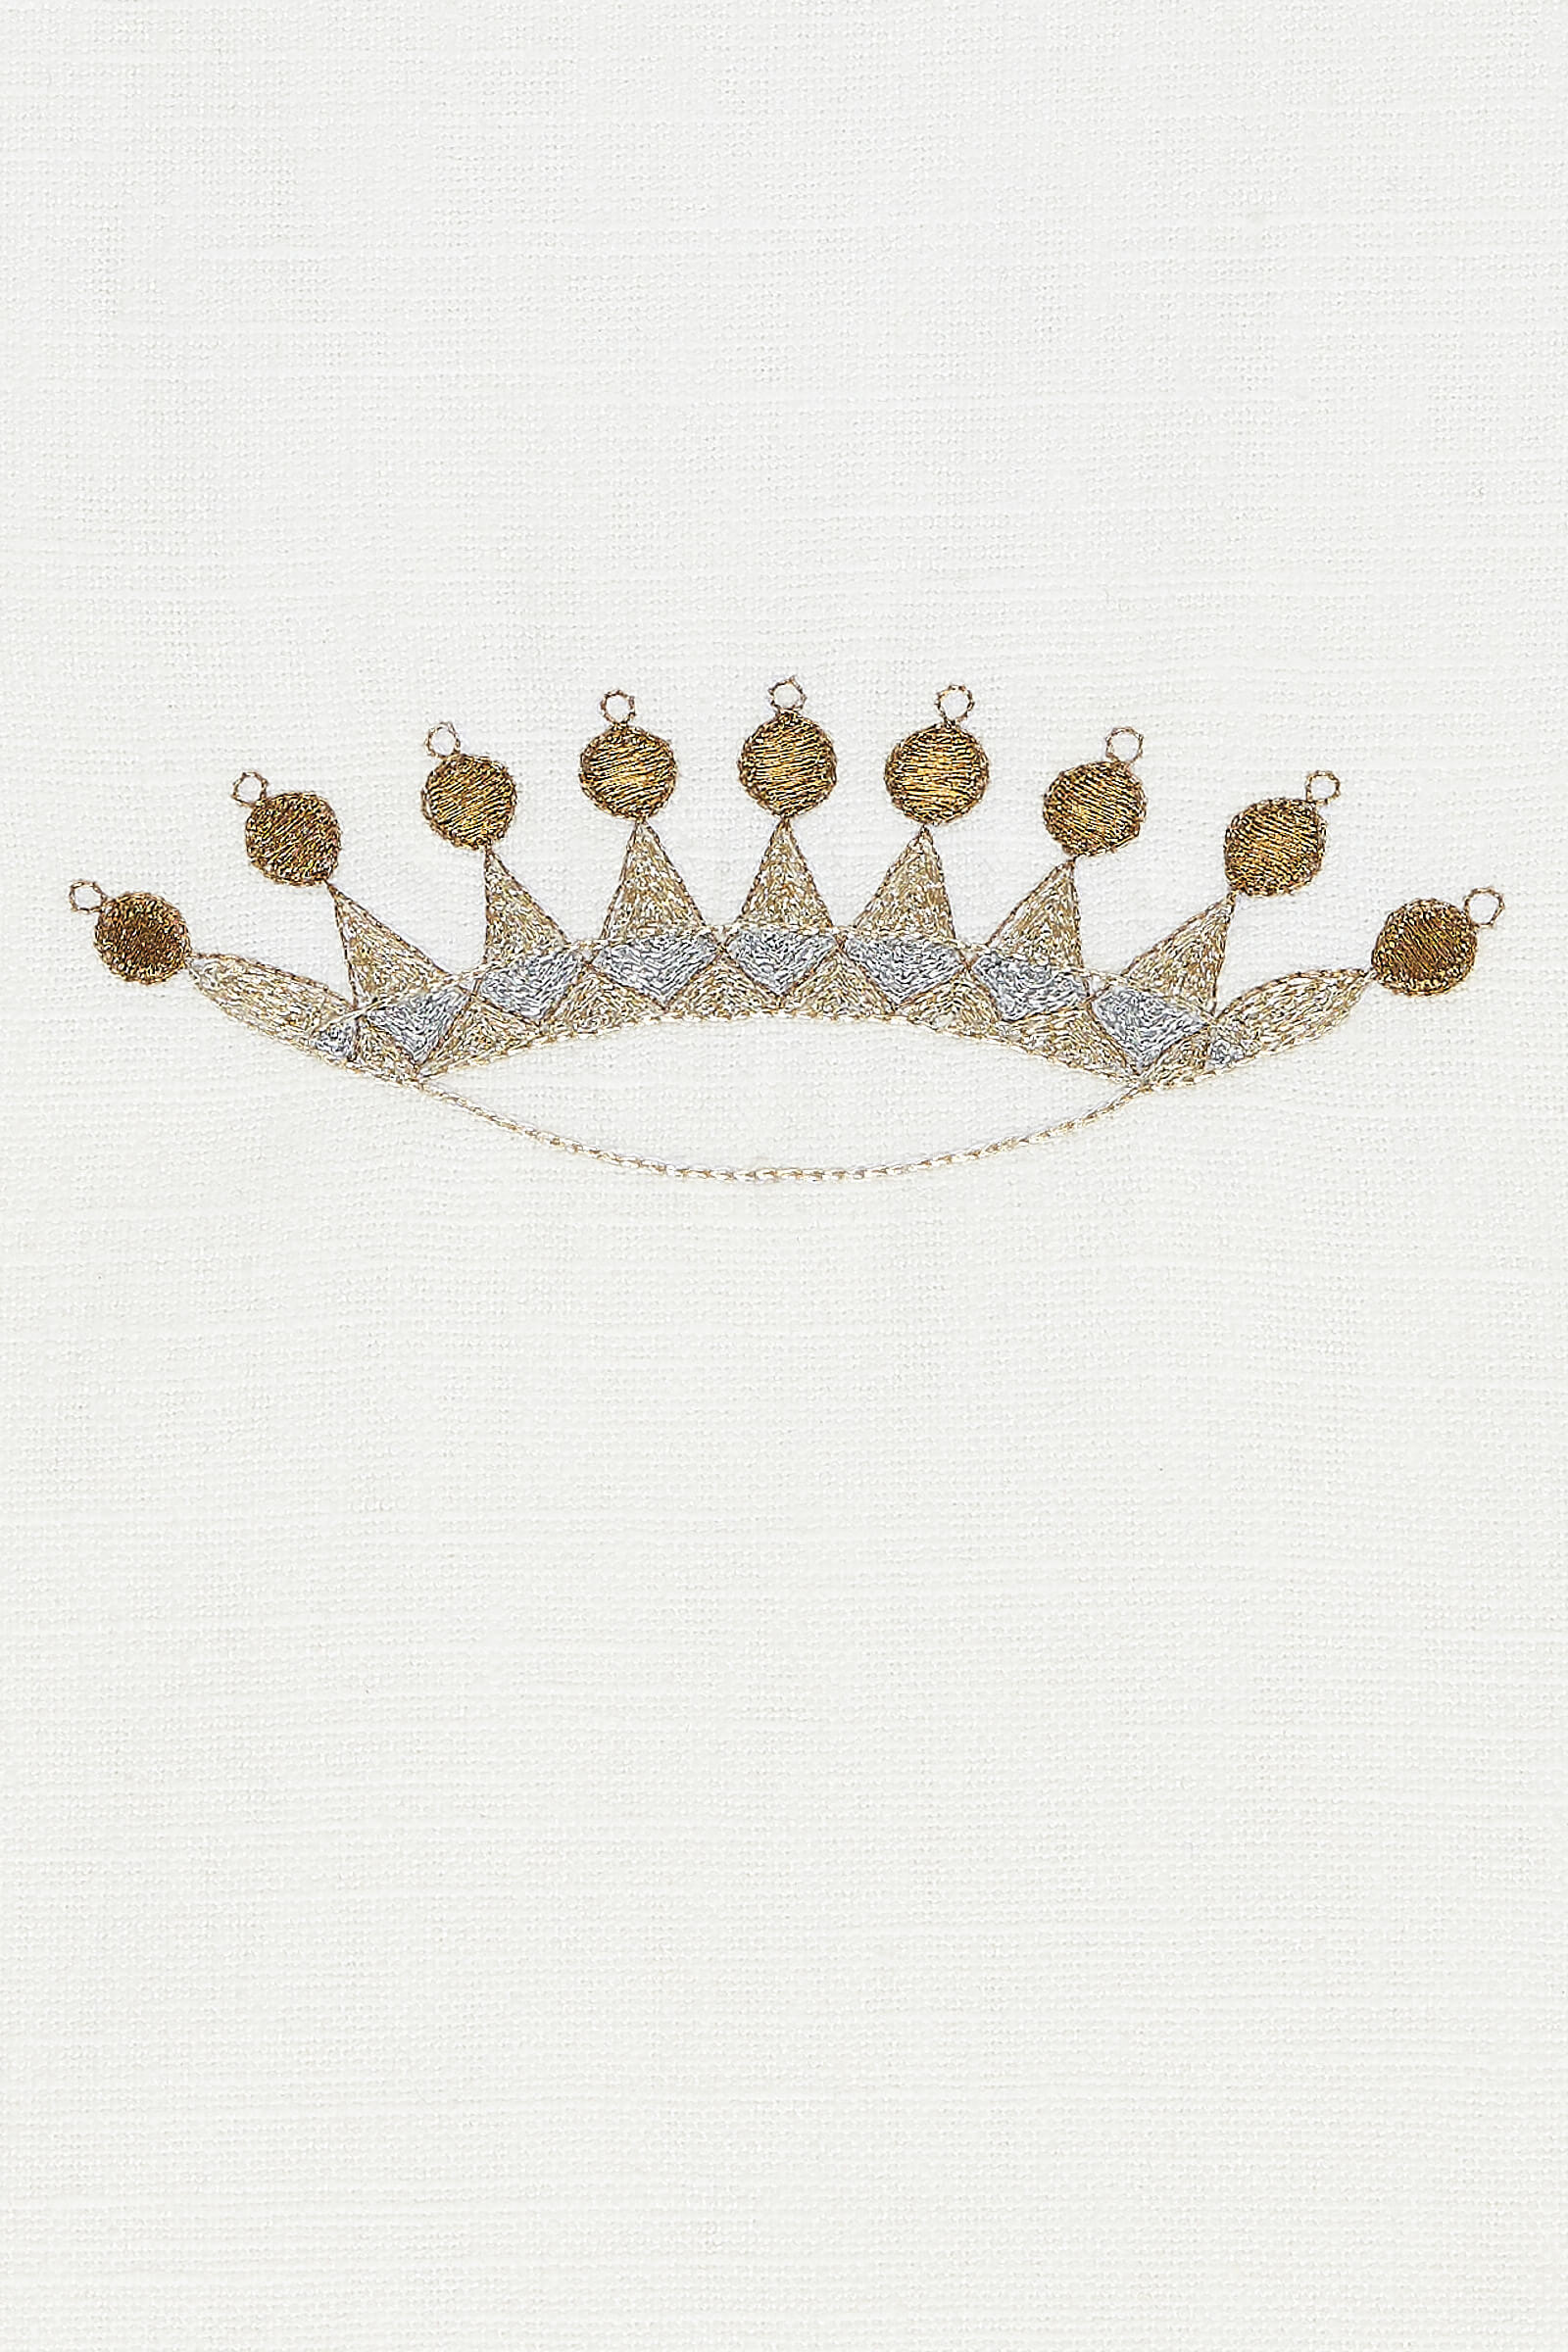 Judah Matzah Cover, Crown